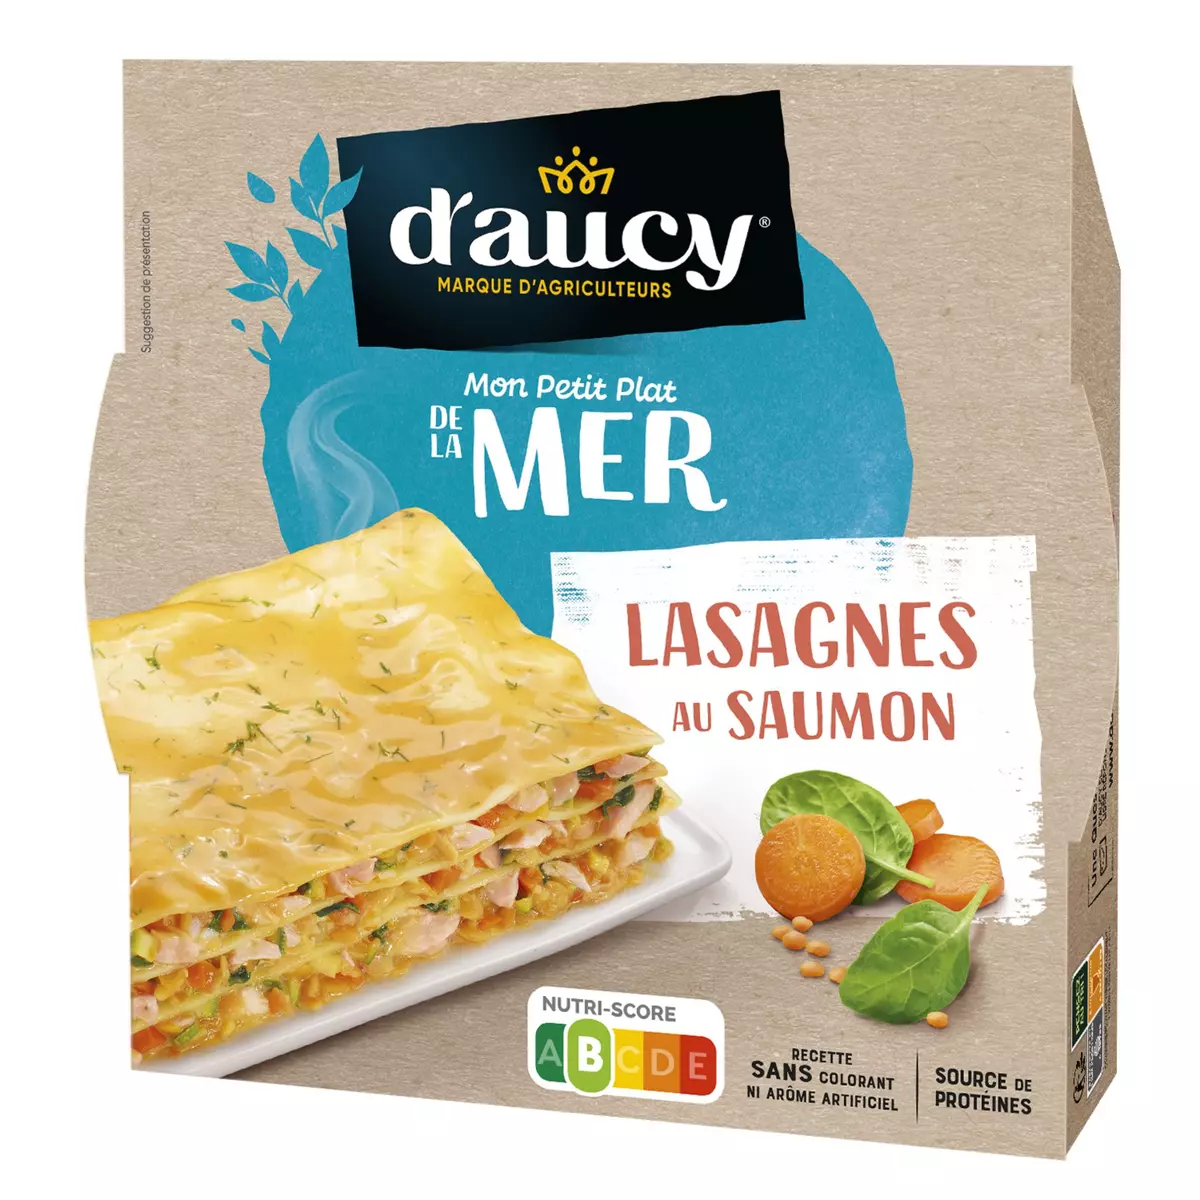 D'AUCY Mon Petit Plat de la Mer Lasagnes au saumon 300g